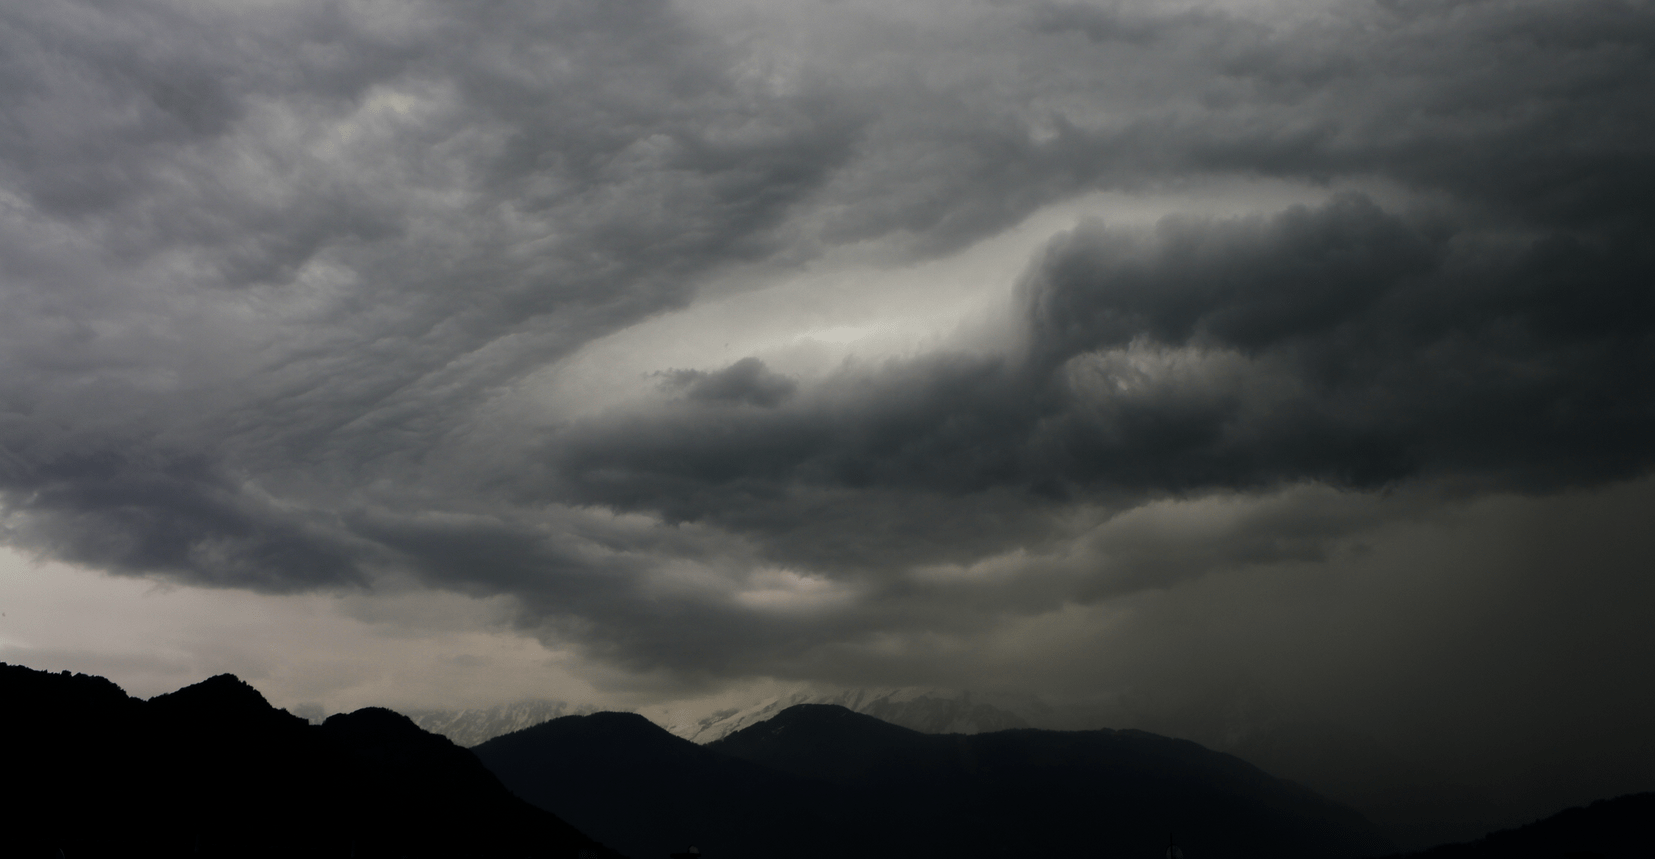 Un petit orage est arrivé sur les Alpes du nord cette après-midi, ciel tourmenté au dessus de Mont Blanc (Haute Savoie) - 26/05/2018 16:52 - Yassine Arbaji